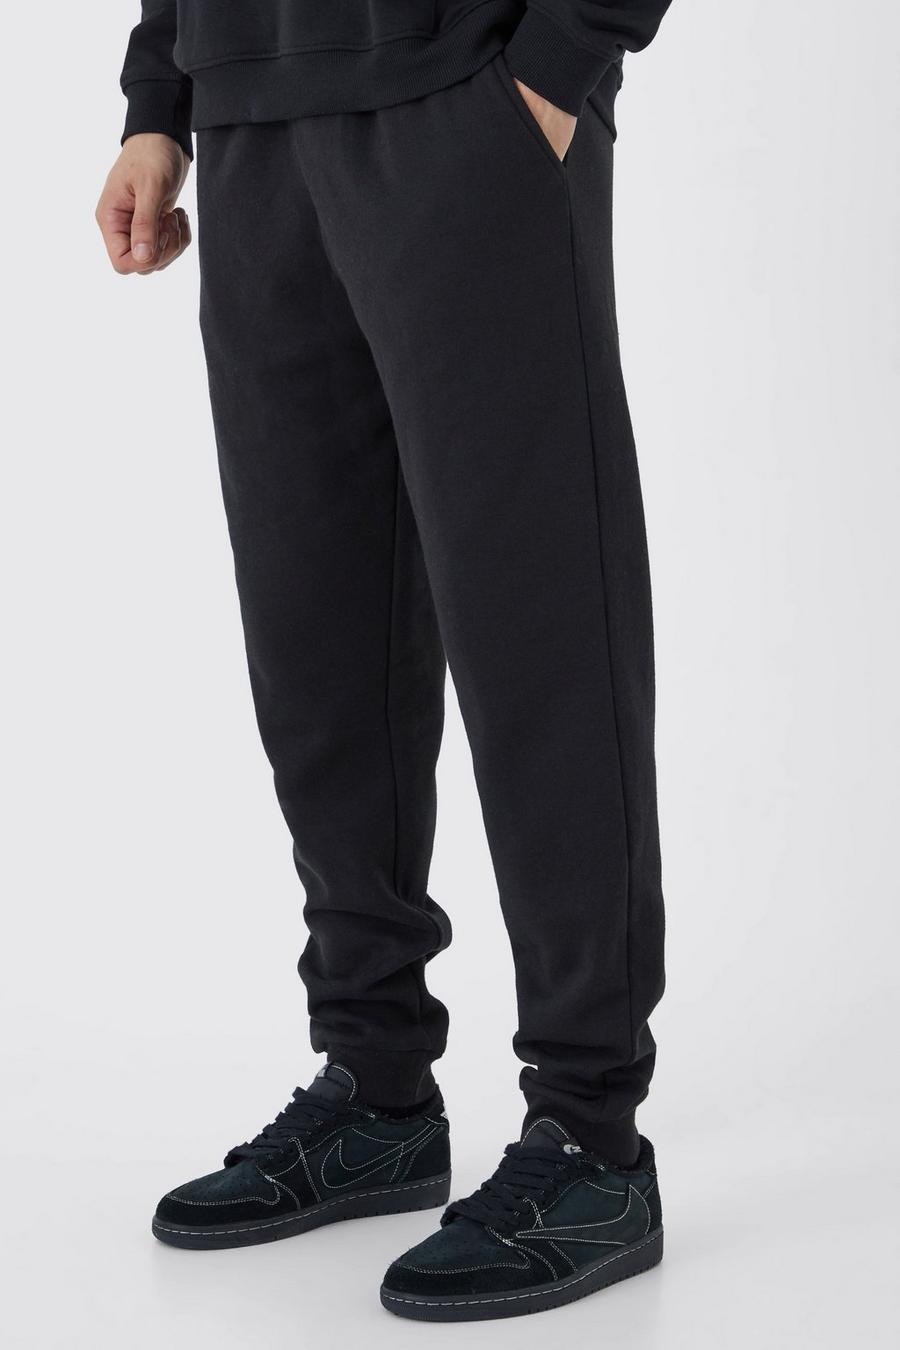 Pantaloni tuta Tall Basic Core Fit, Black image number 1